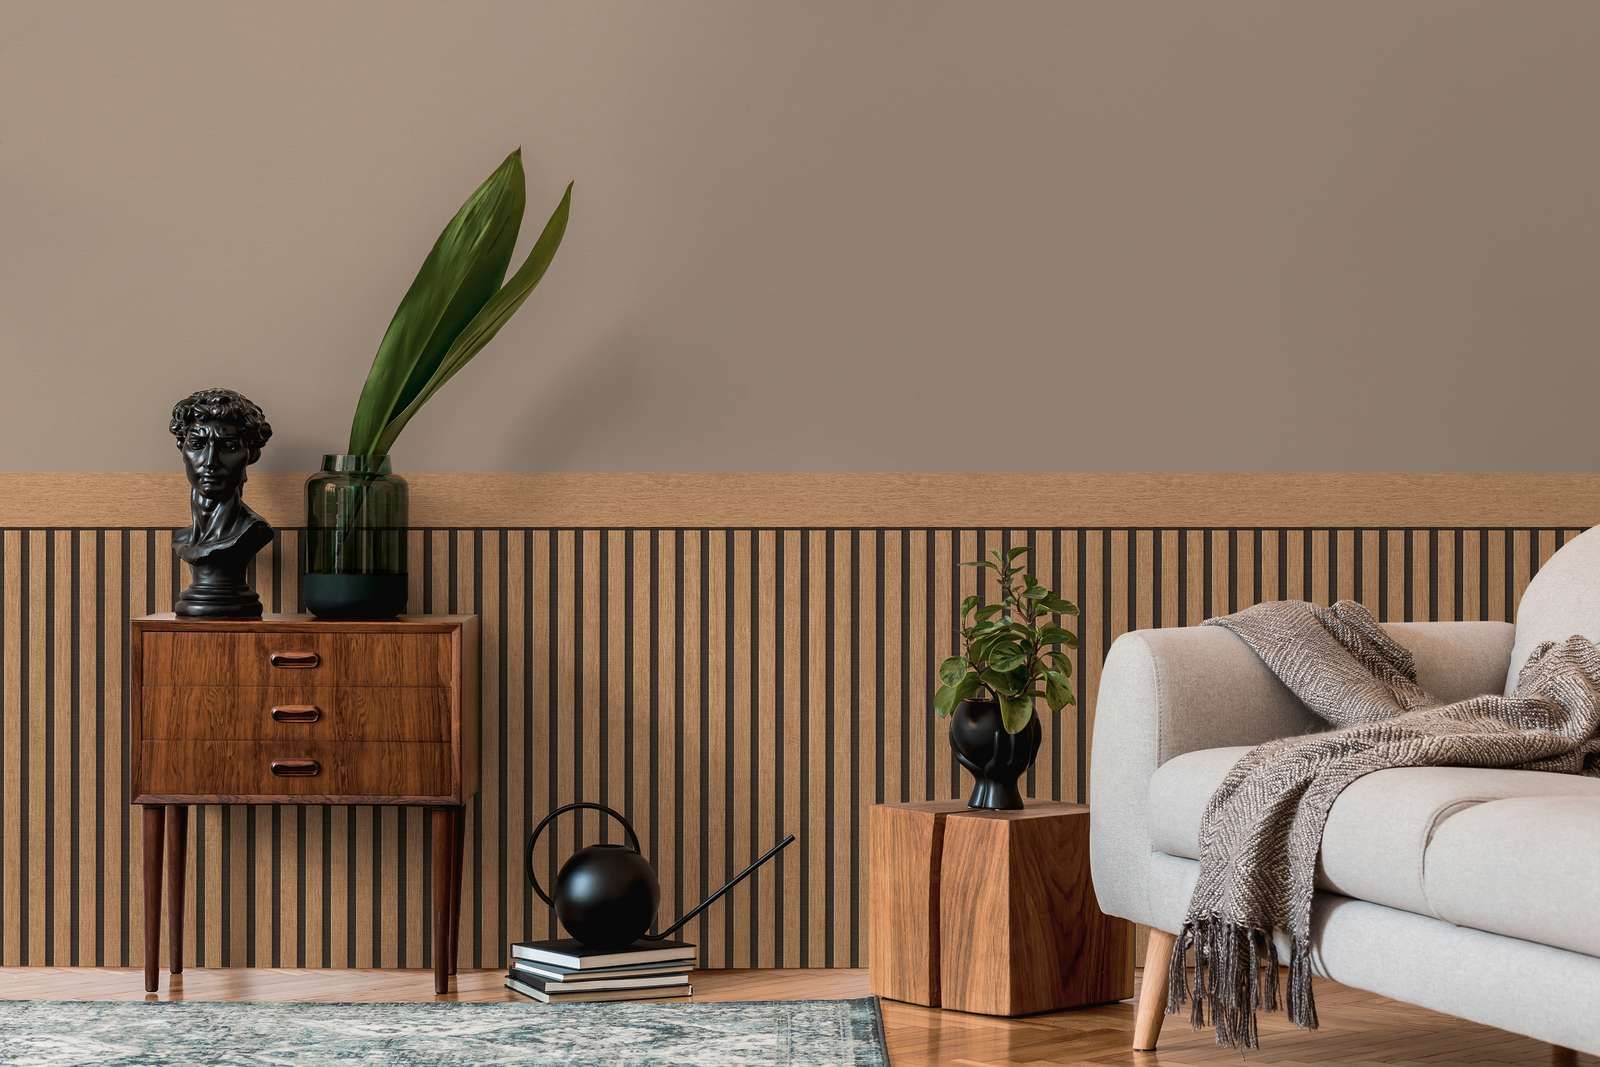             Wandvlies met realistisch akoestisch paneelpatroon van hout - beige, bruin
        